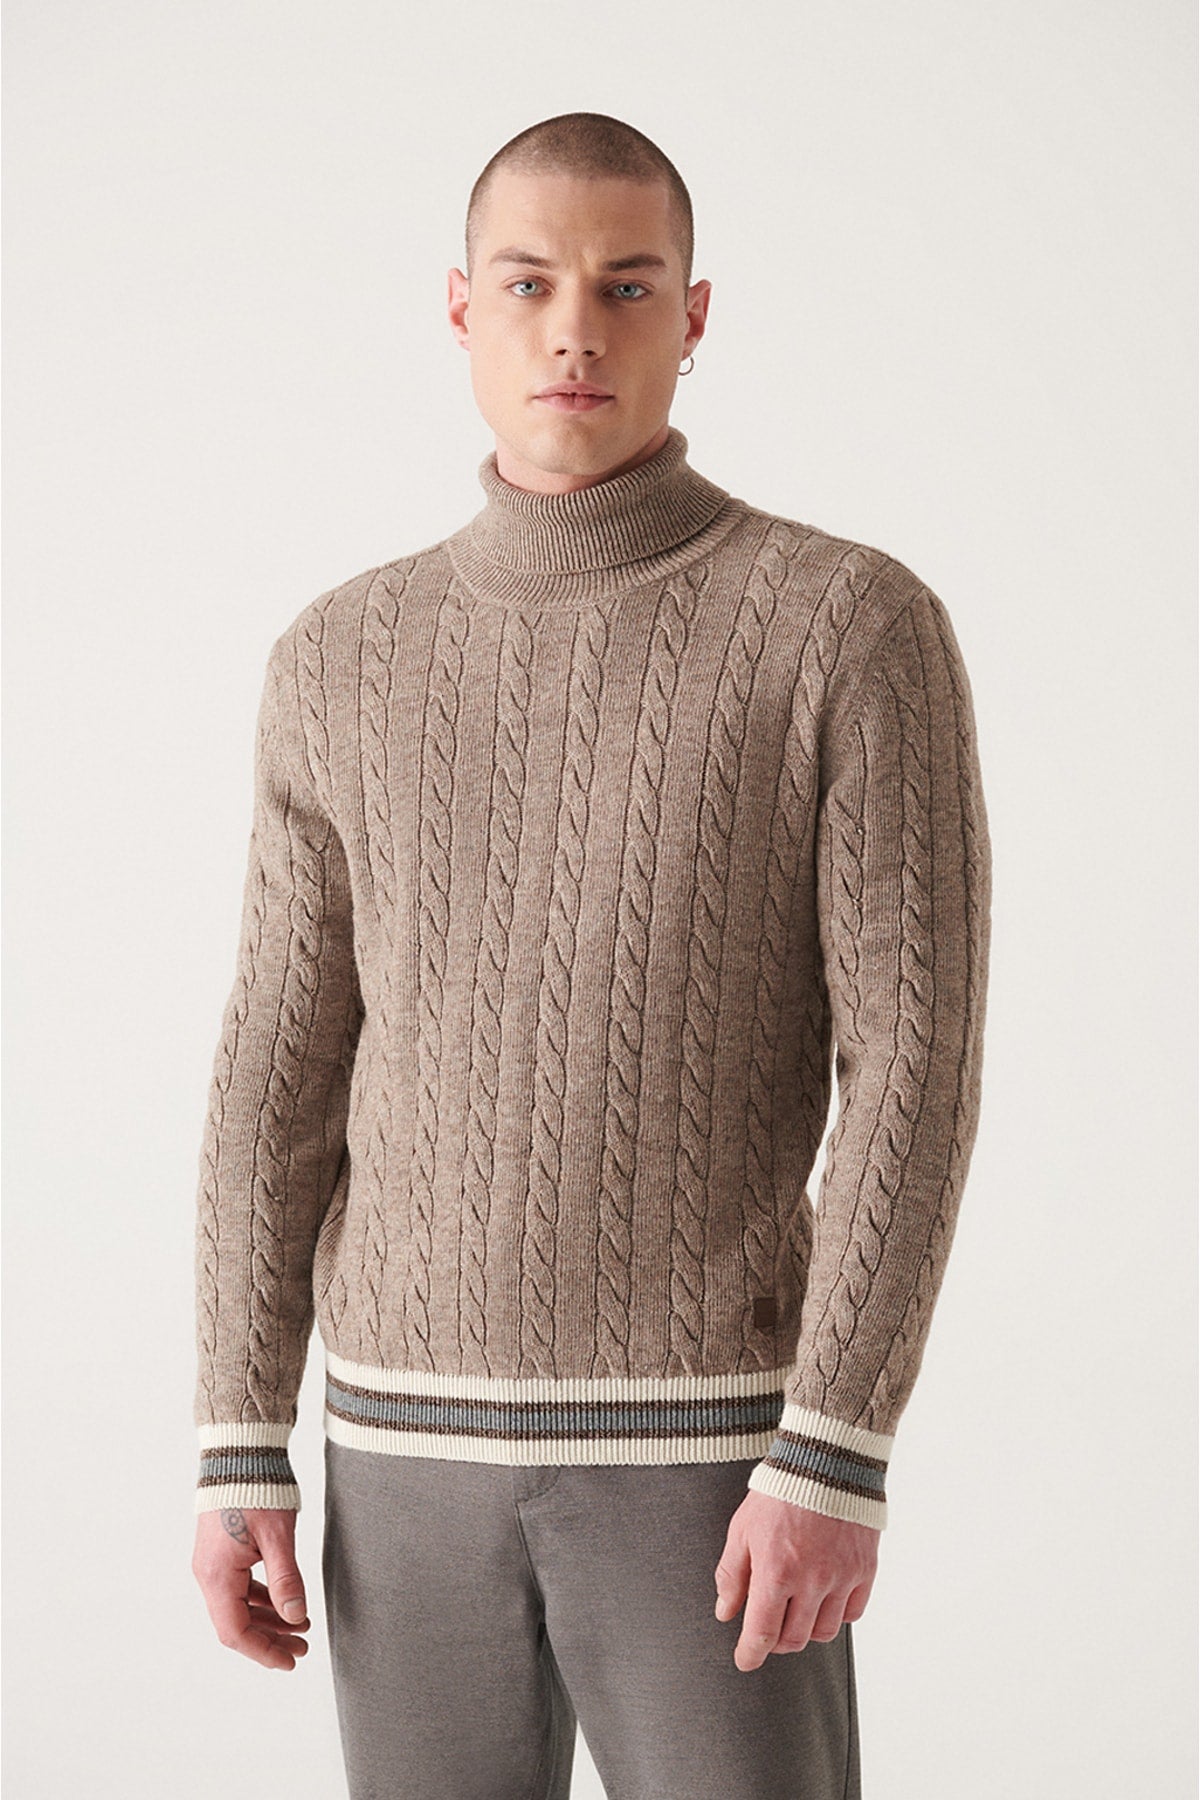 Unisex mink full fishing collar braided knitwear sweater A22y5041